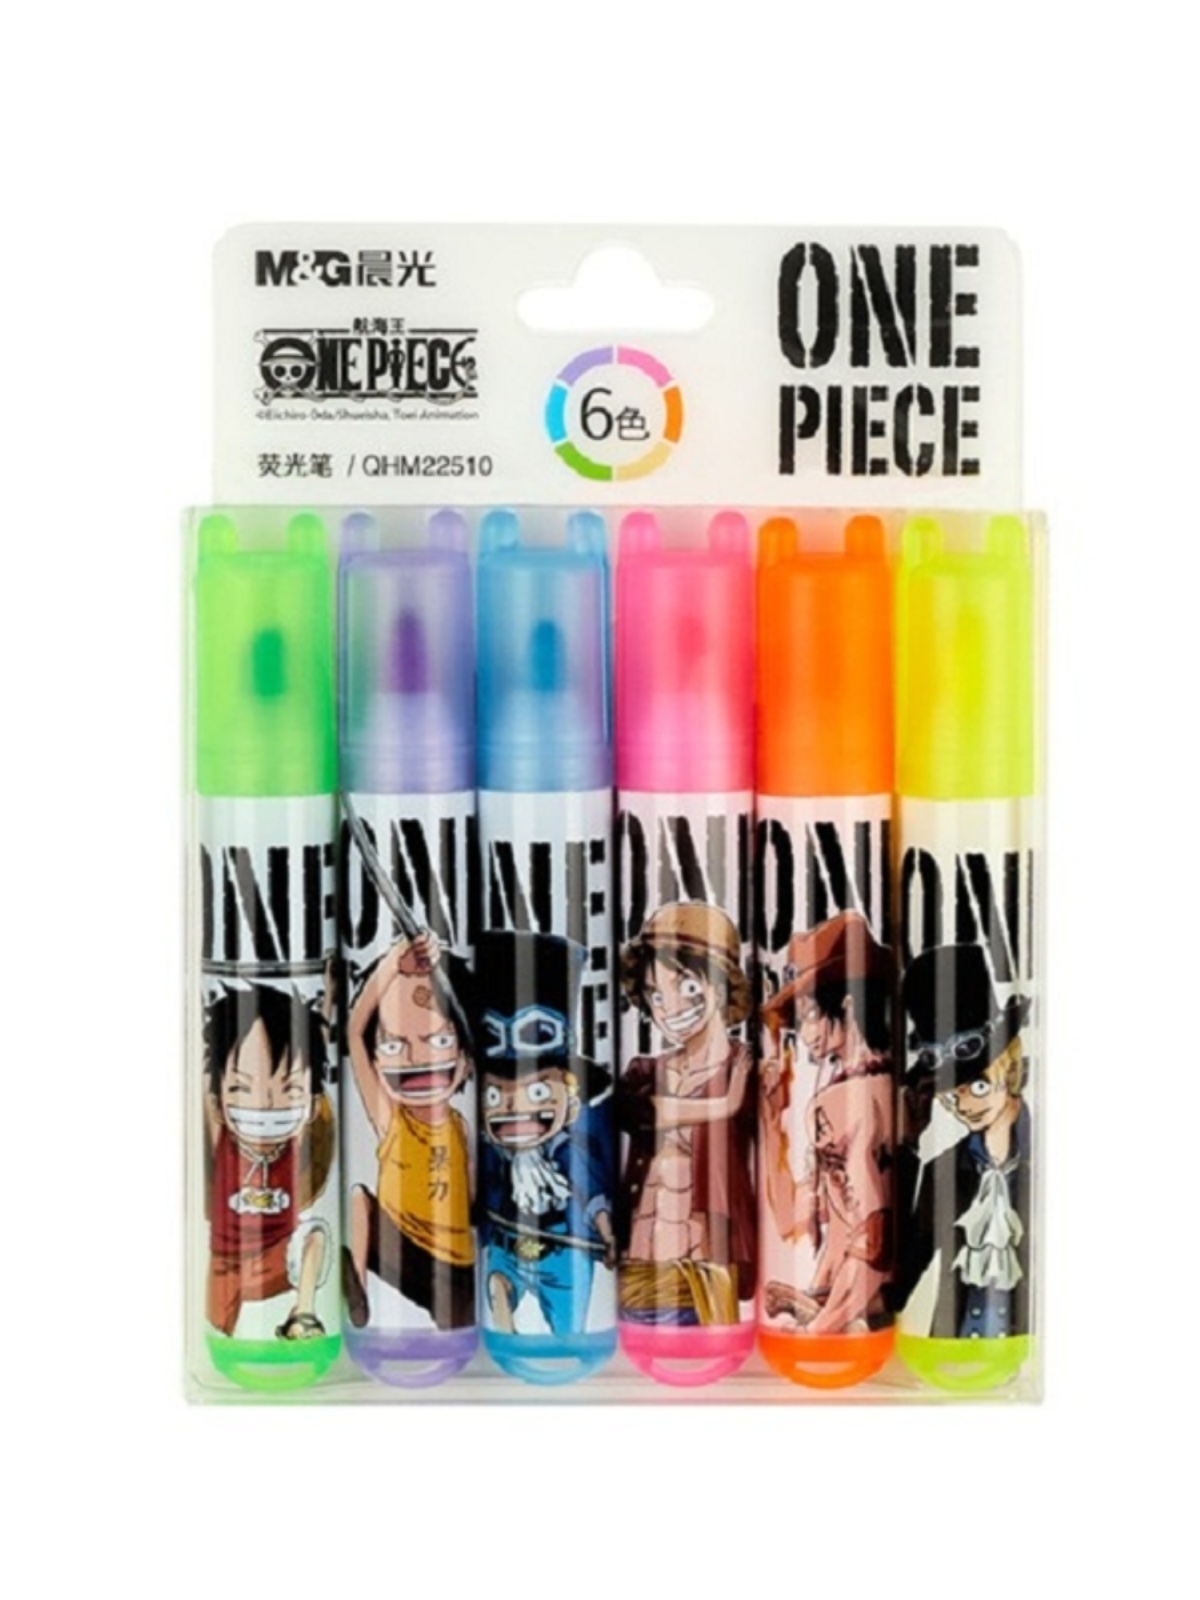 荧光笔6色套装晨光奇趣动物系列 小学生奖品礼品彩色笔 一笔多用 耐磨笔头 彩色标记 标记醒目